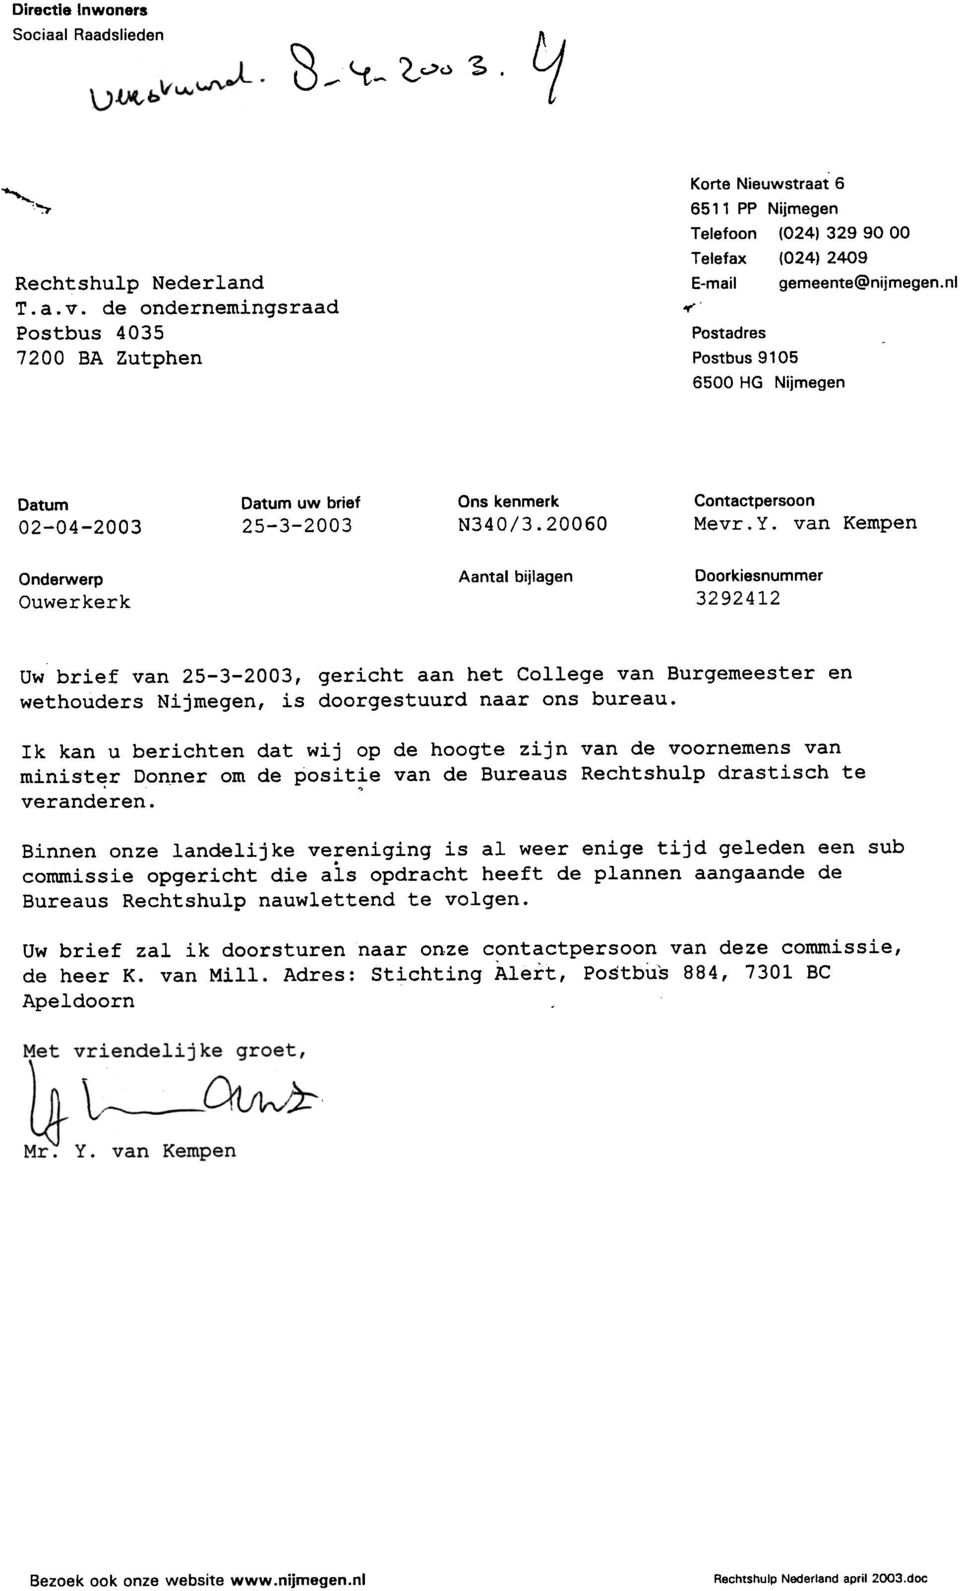 van Kempen Onderwerp Ouwerkerk Aantal bijlagen Doorkiesnummer 3292412 Uw brief van 25-3-2003, gericht aan het College van Burgemeester en wethouders Nijmegen, is doorgestuurd naar ons bureau.